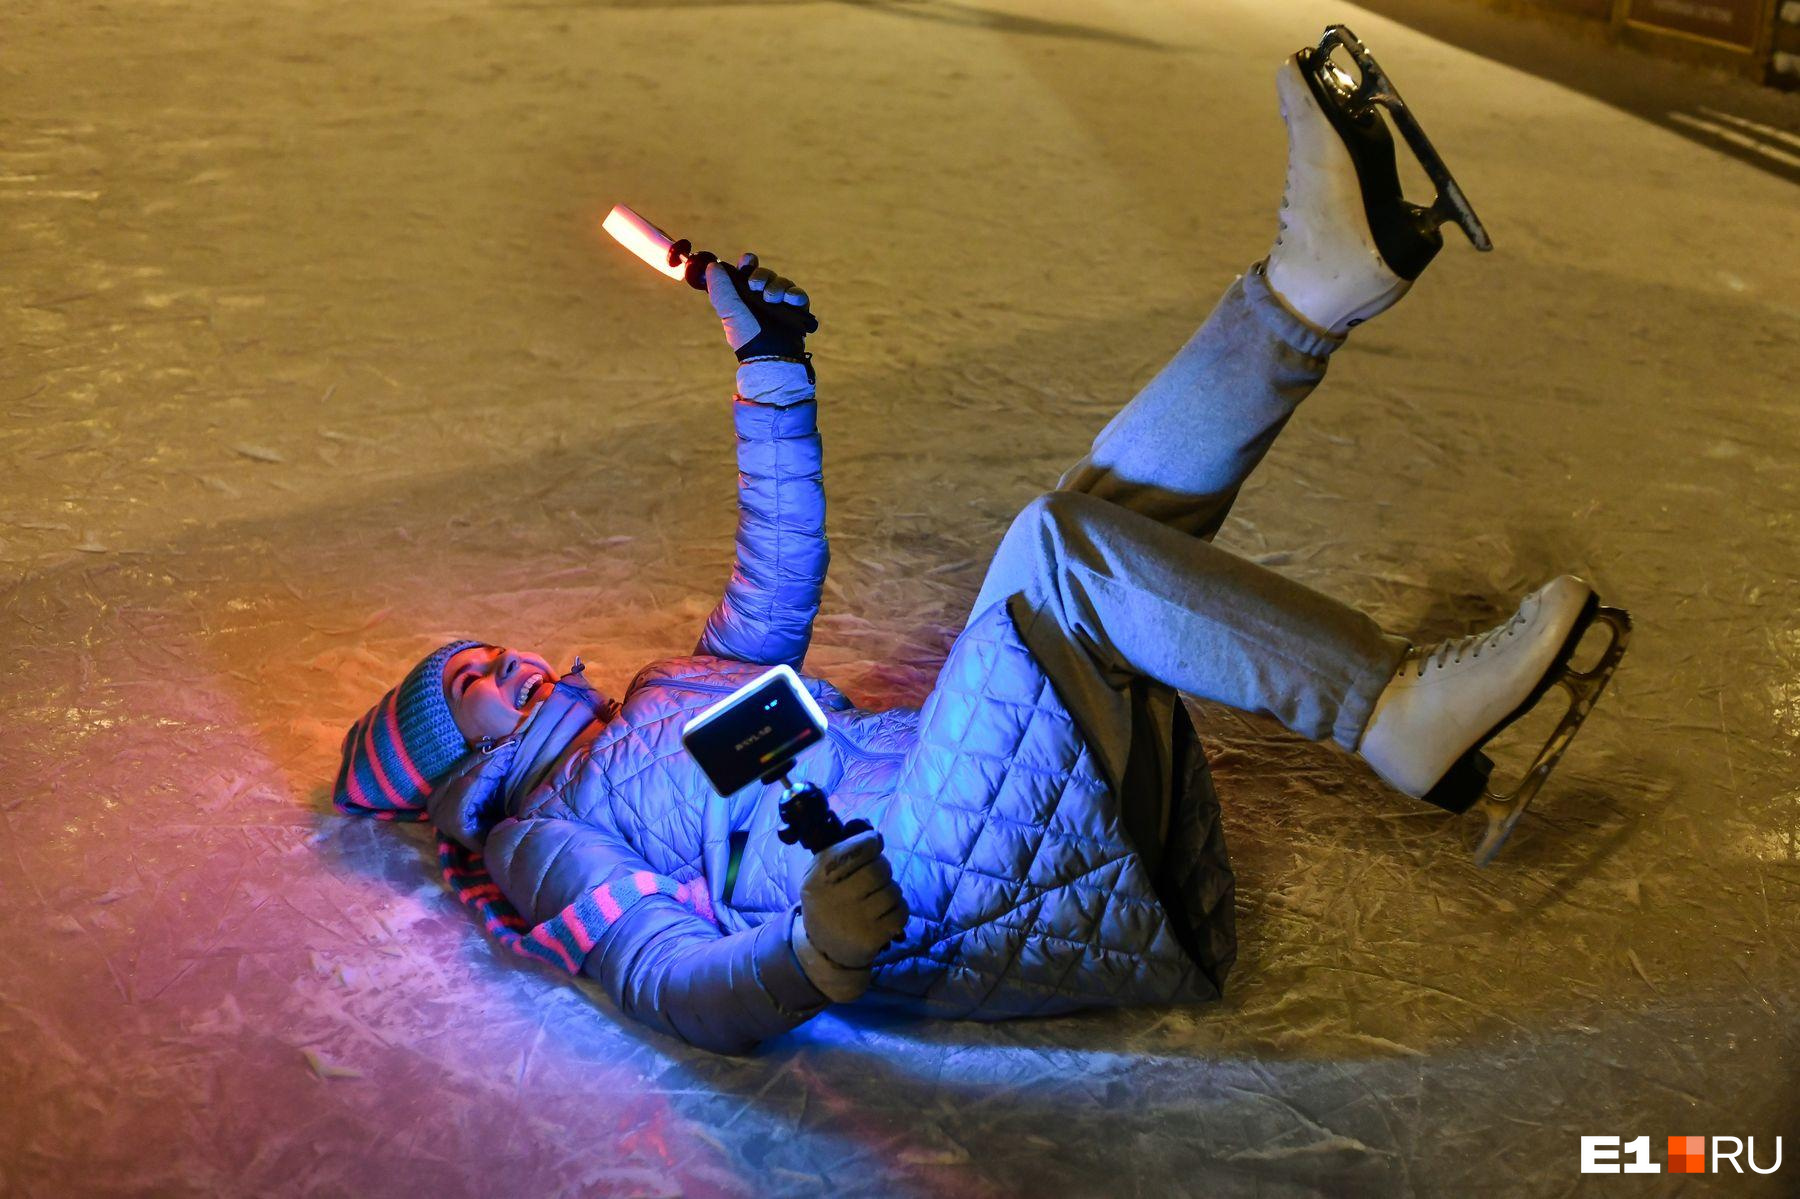 Бегом на лед! Где покататься на коньках в Екатеринбурге и сколько это стоит